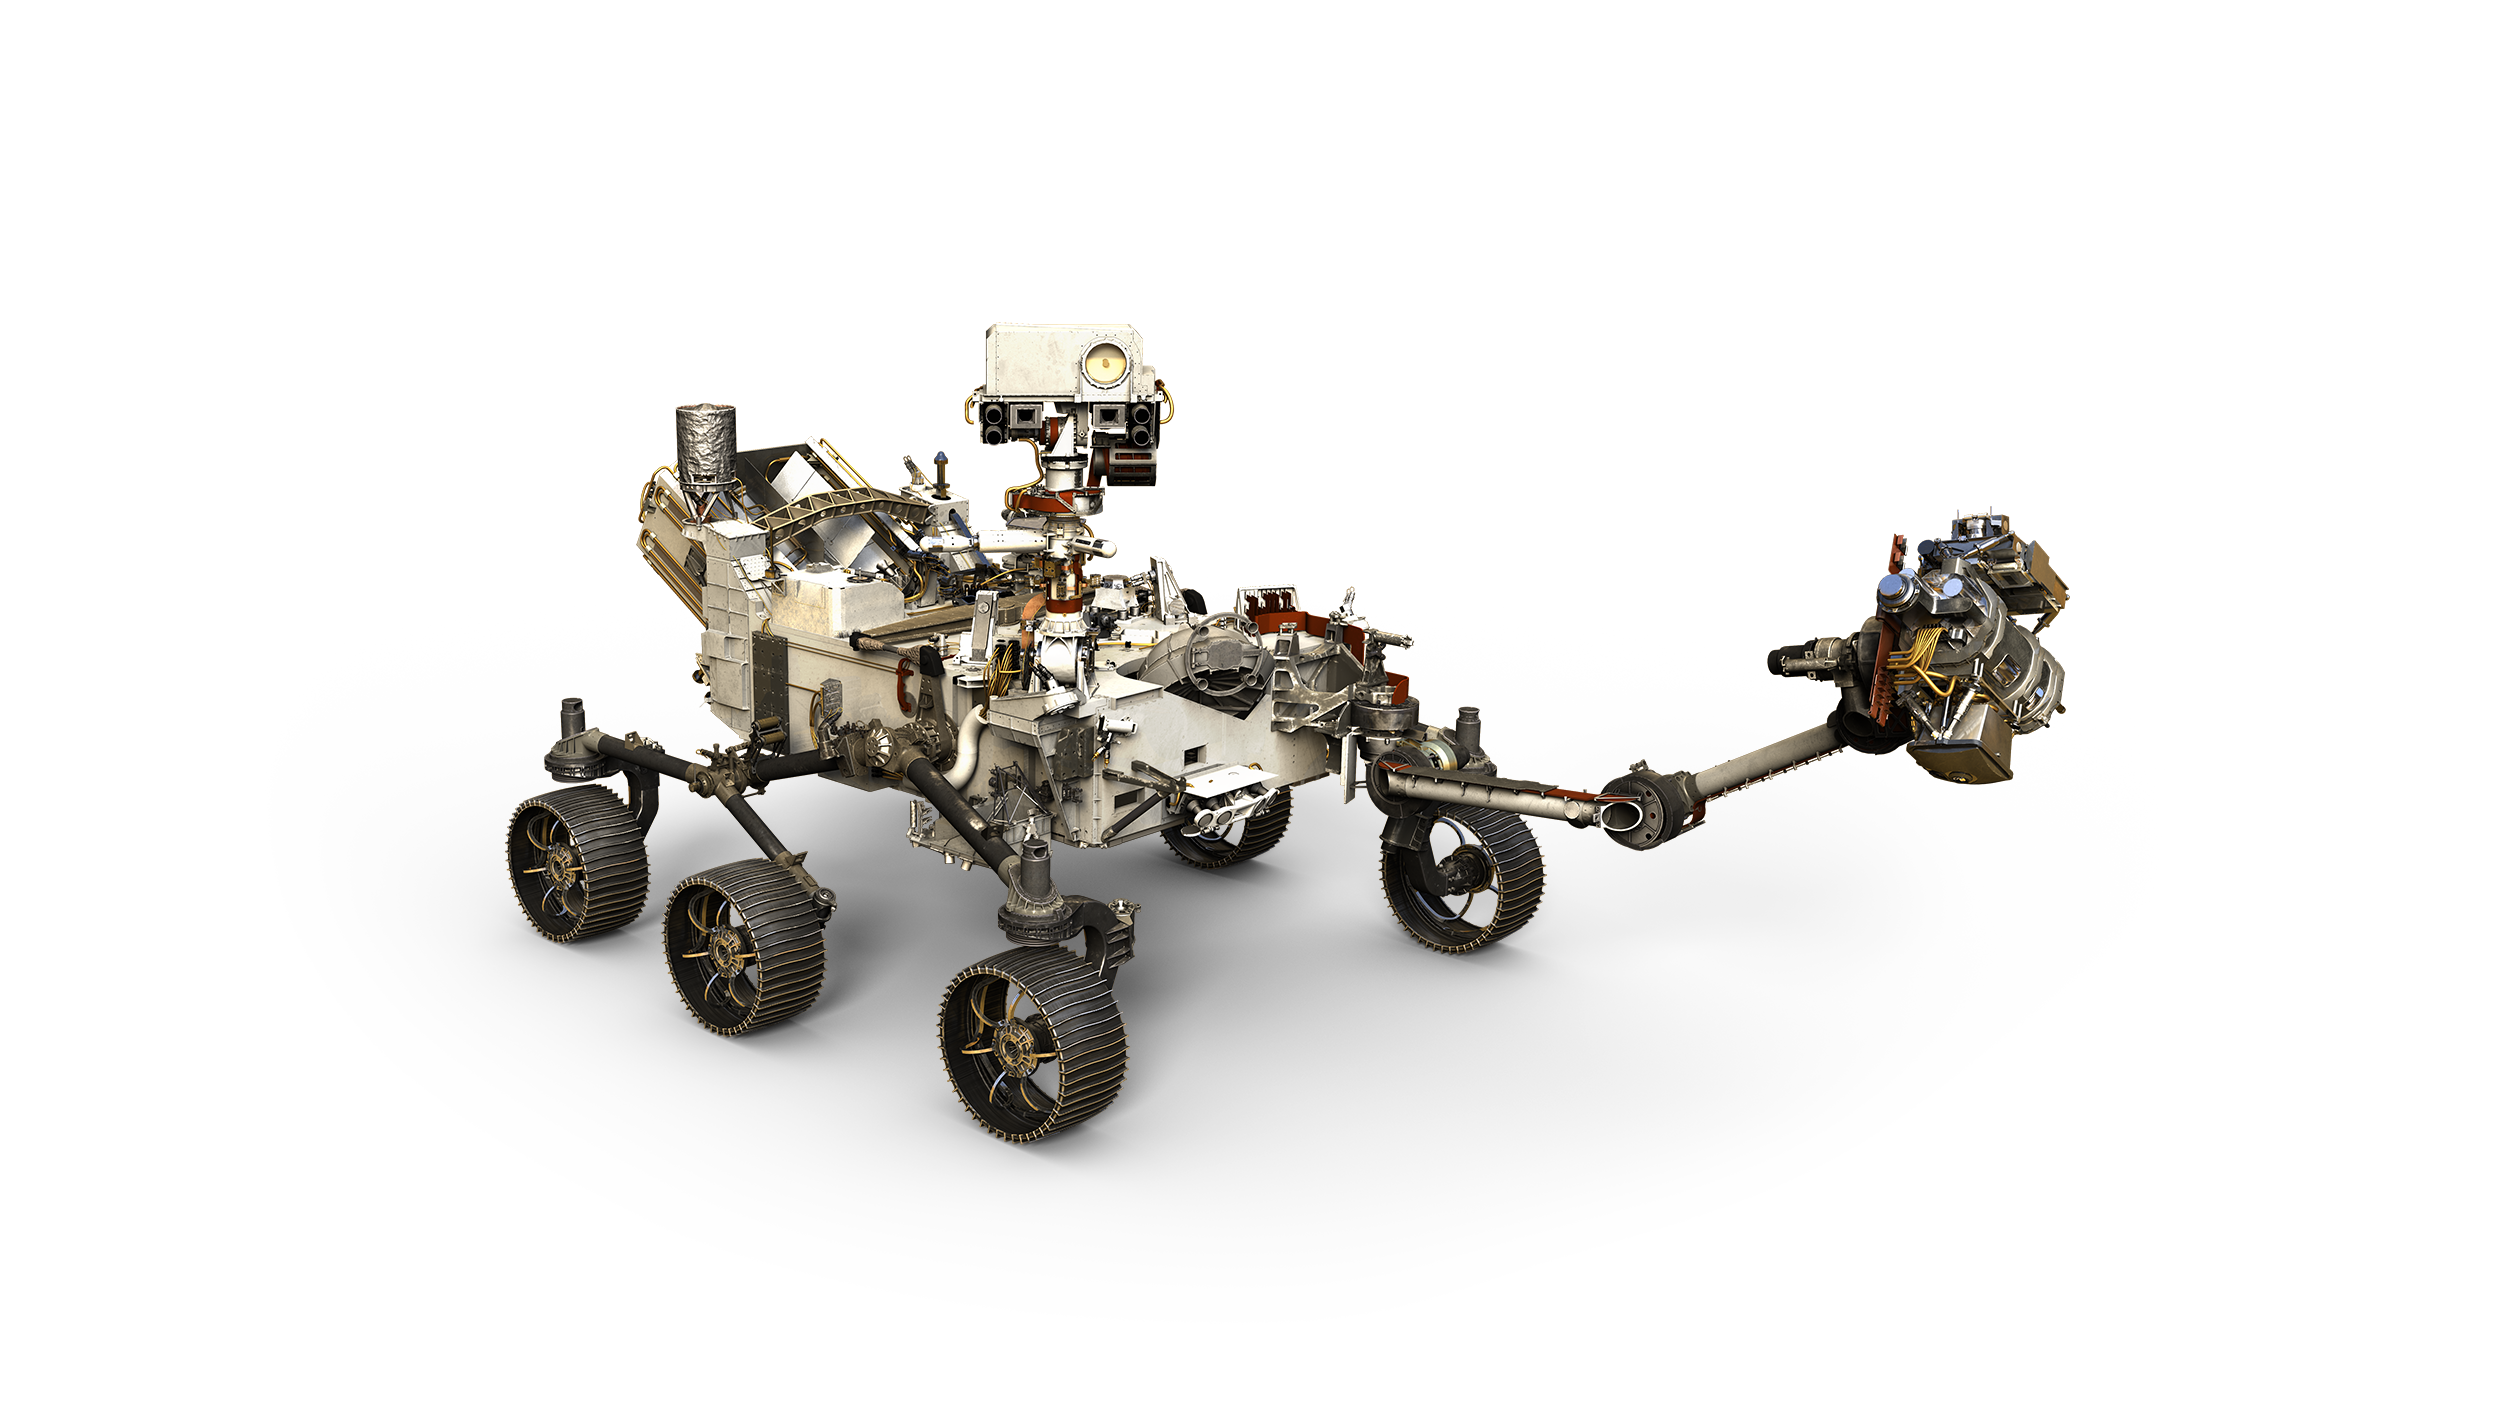 nasa公布的新一代火星漫游车火星2020有何特点和改进? 